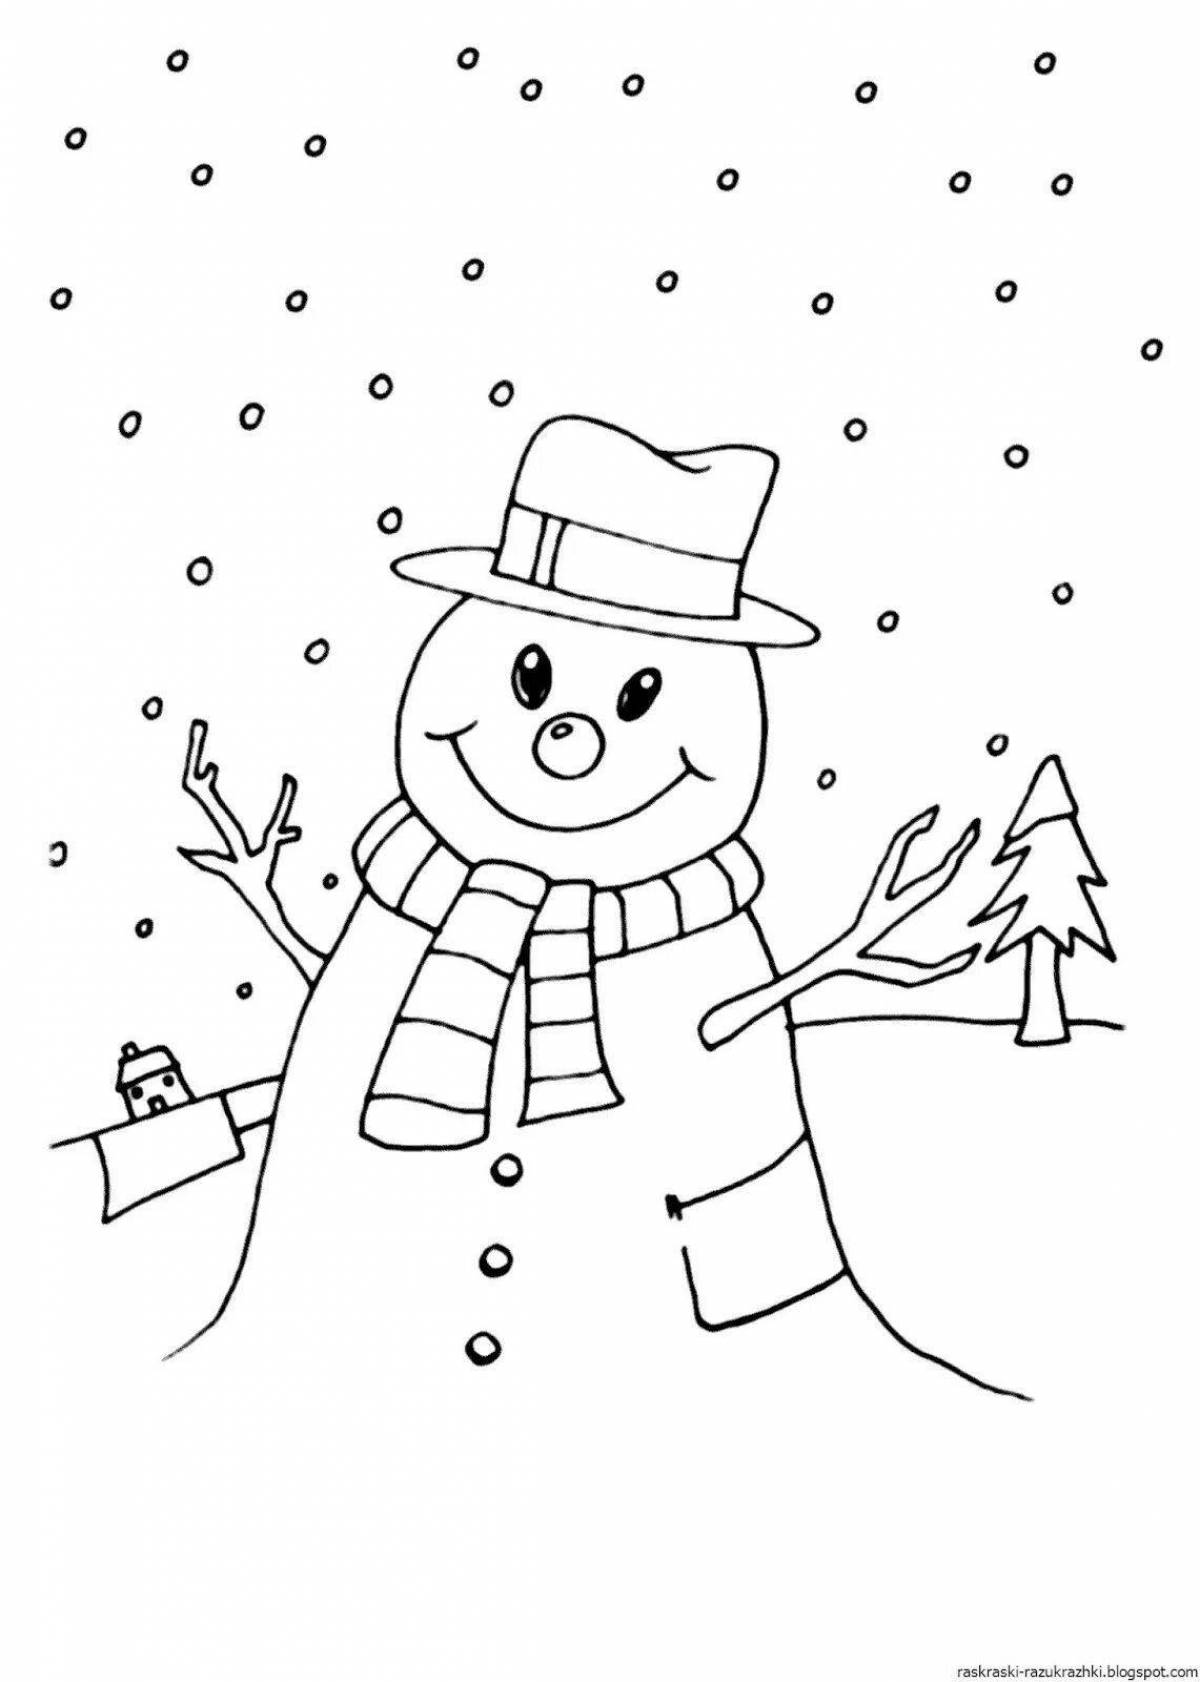 Live children's coloring snowman